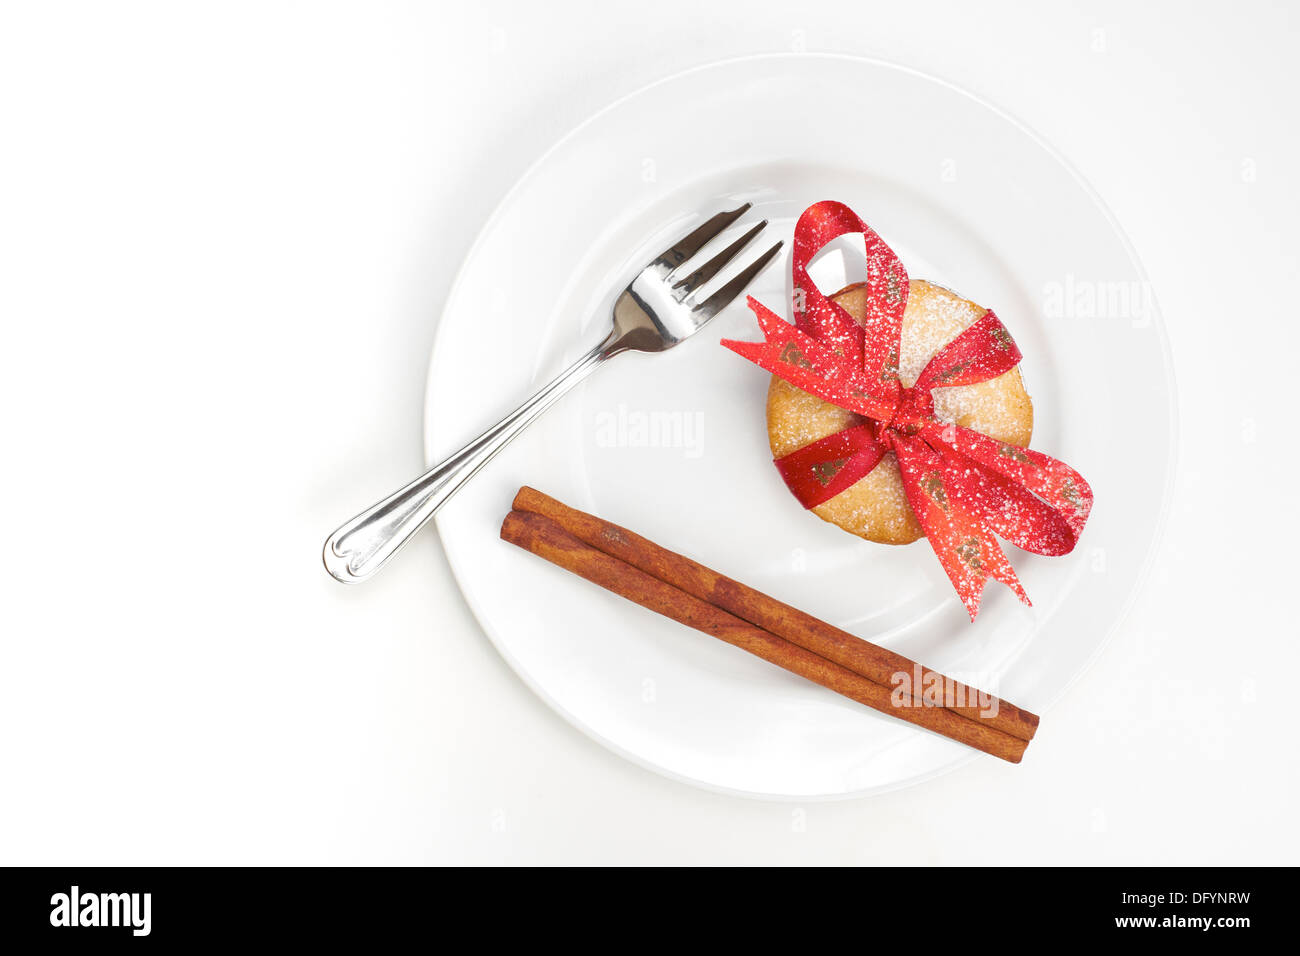 Süße Weihnachten Hackfleisch Zimt Pieand Stick mit einem roten Band gebunden um ihn auf einem weißen Teller und Hintergrund. Stockfoto